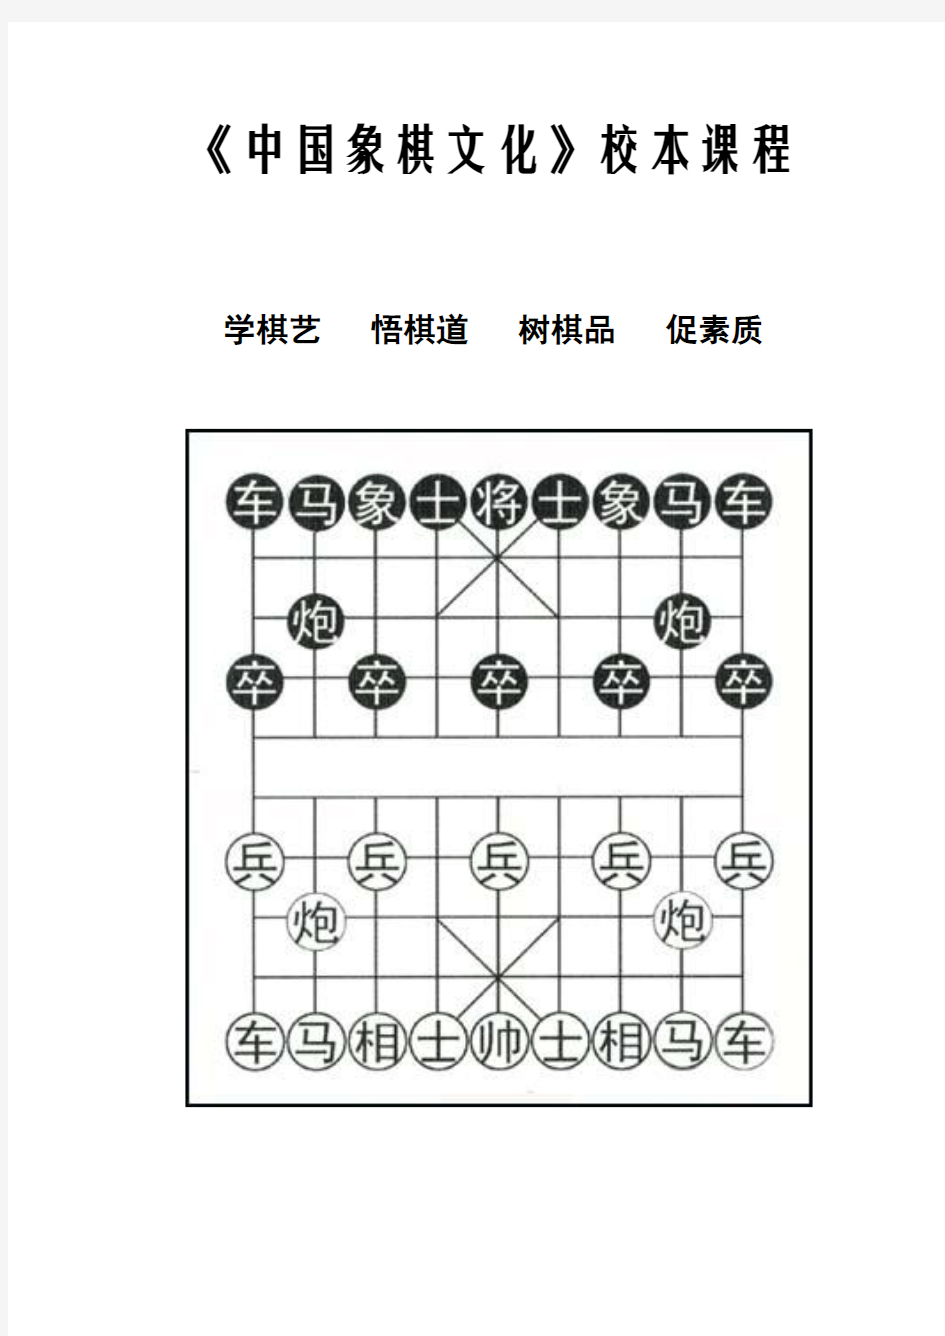 小学中国象棋文化校本课程(中学也可用)